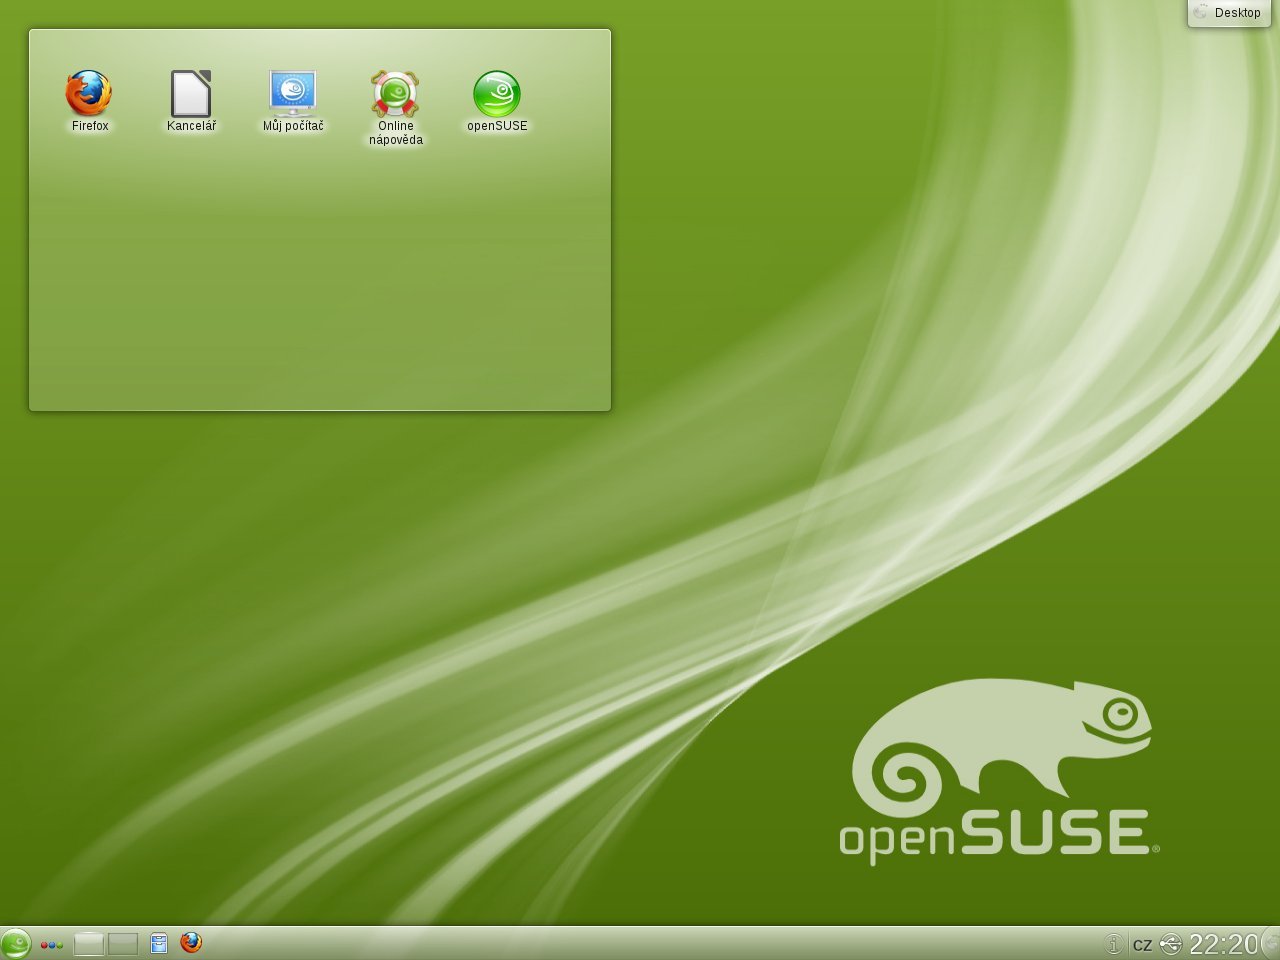 Stejně jako jiné distribuce je openSUSE 12.1 laděné do zelena. Není ale problém vzhled distribuce upravit k obrazu svému